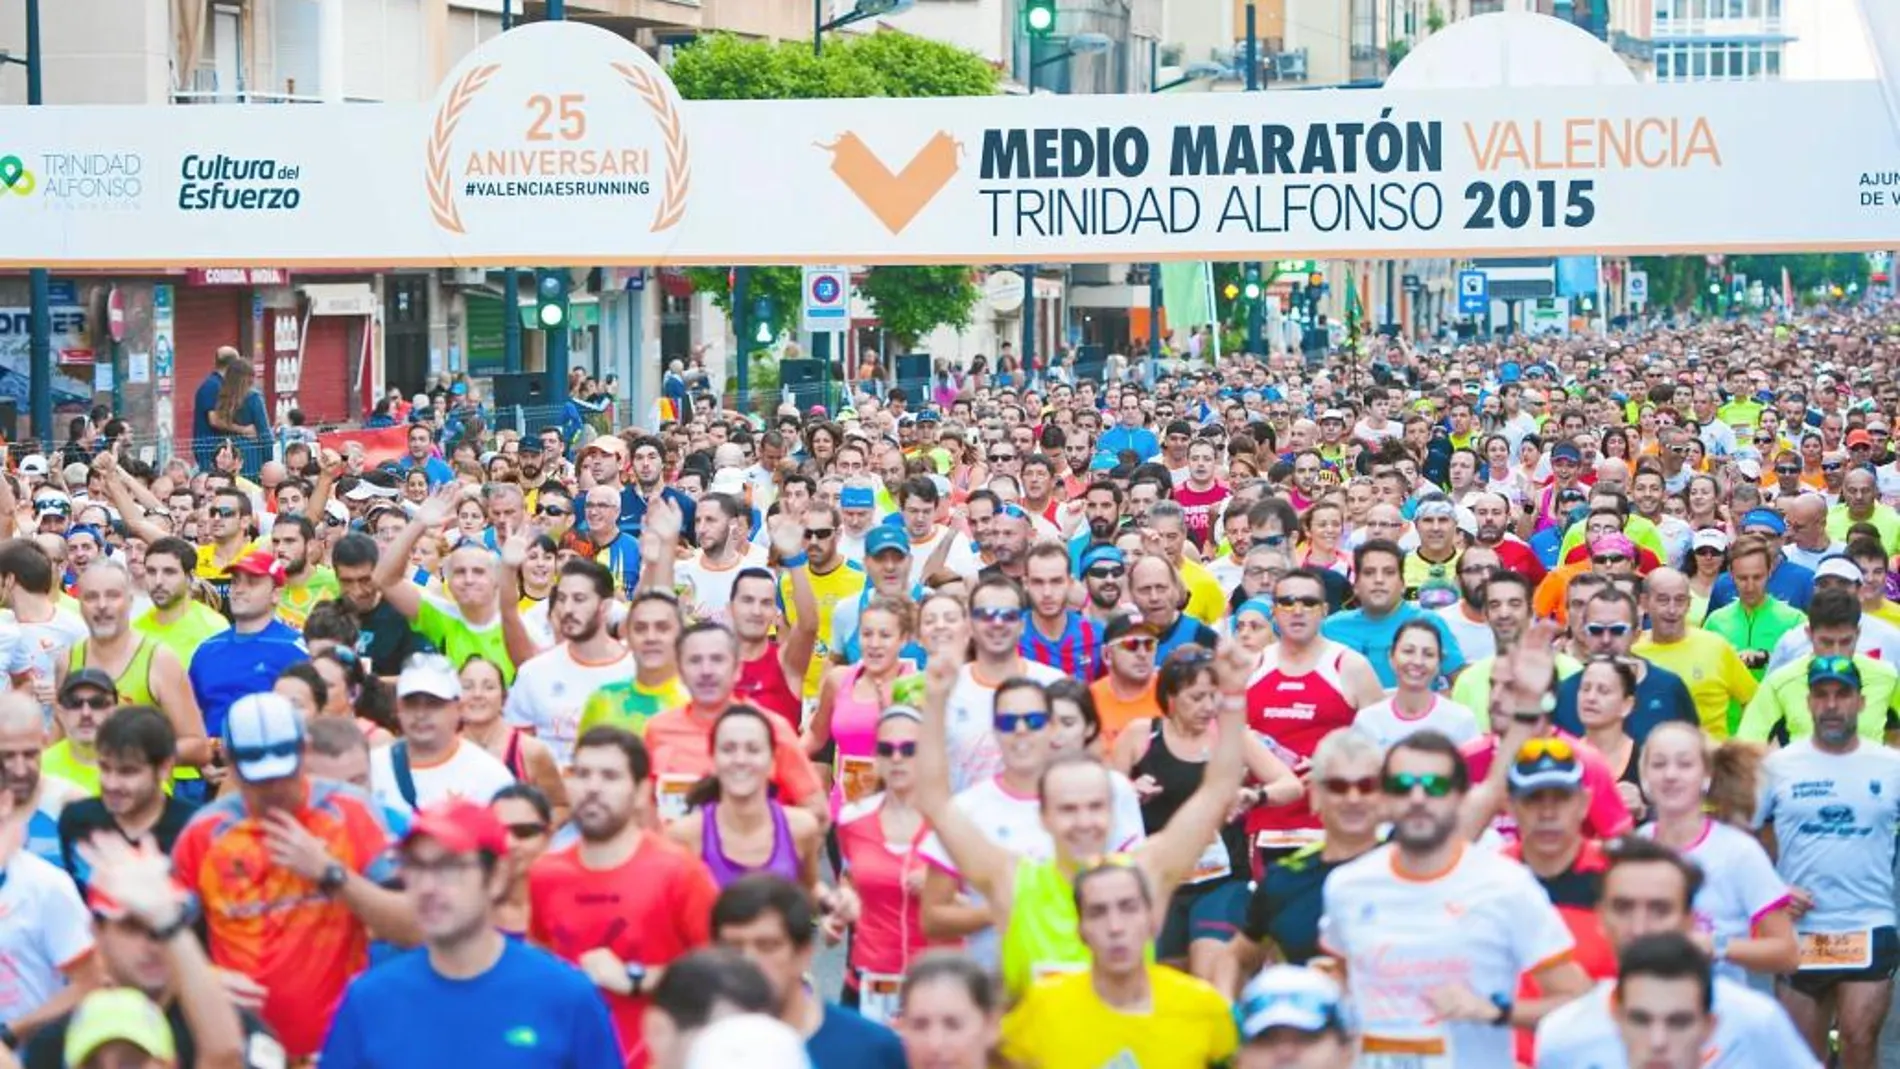 Imagen de la media maratón que se celebró el pasado domingo en Valencia, en la que estaban inscritas más de 12.000 personas